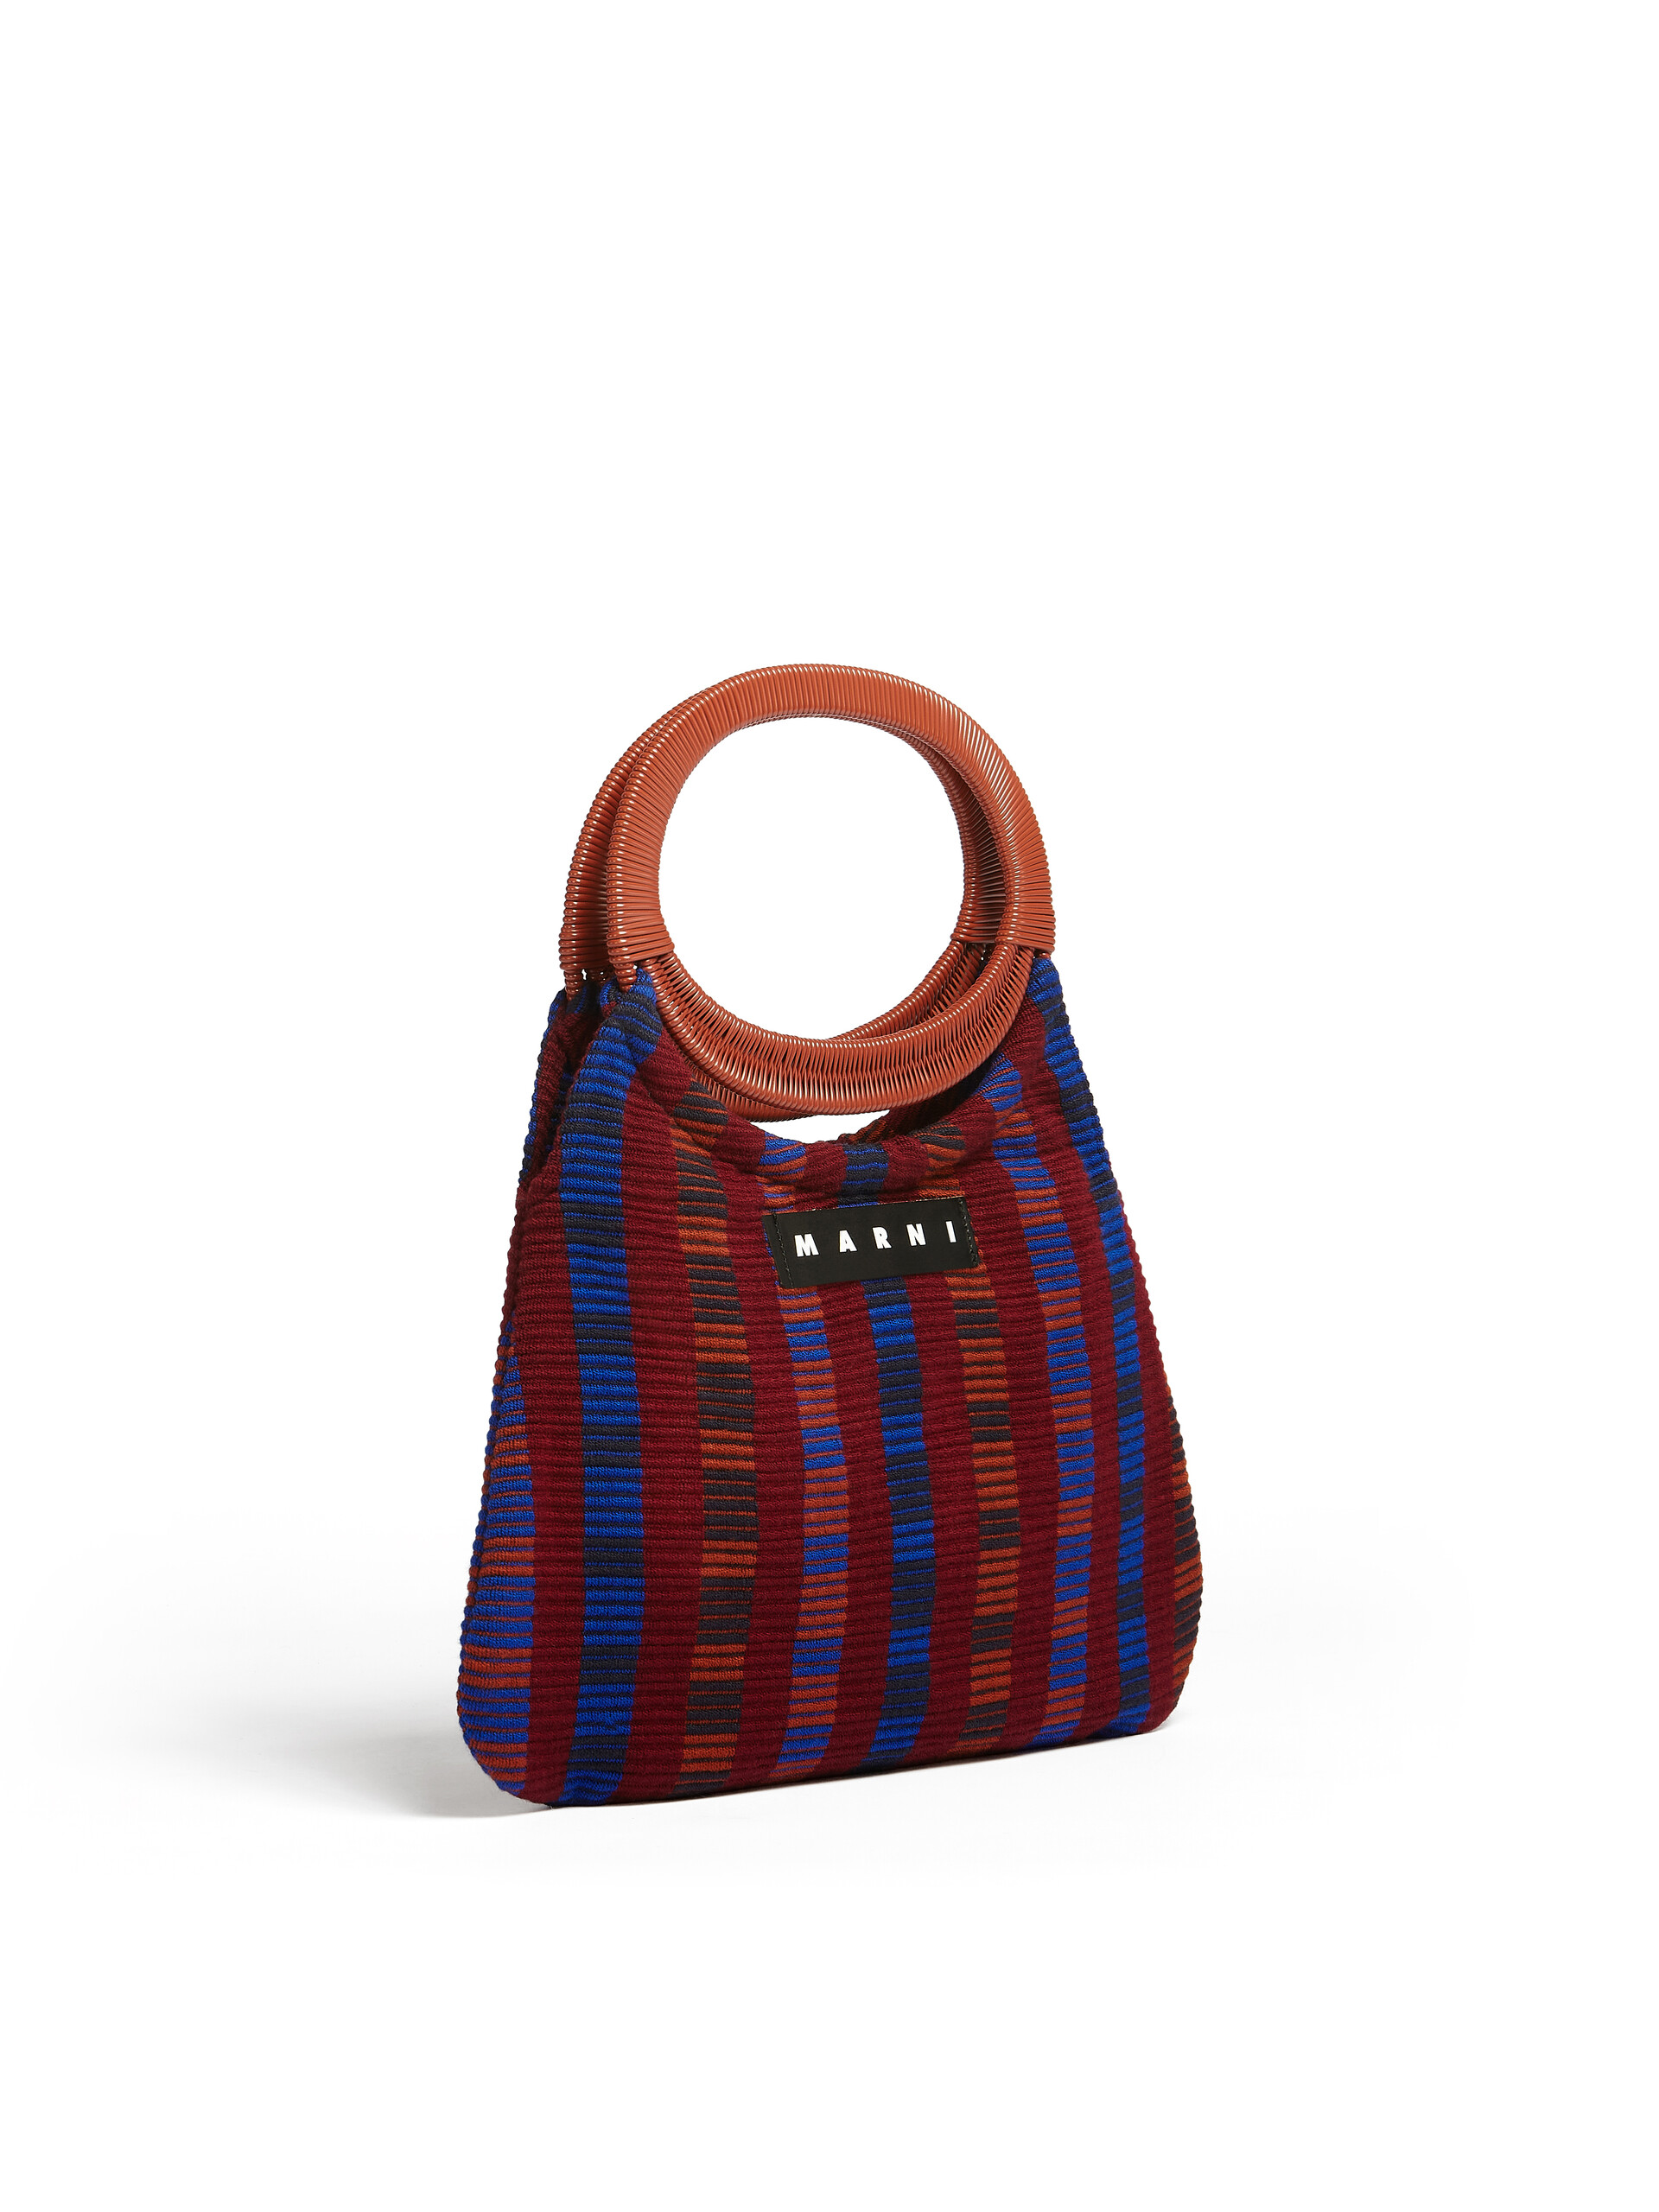 MARNI MARKET BOAT bag in multicolor striped cotton | Marni